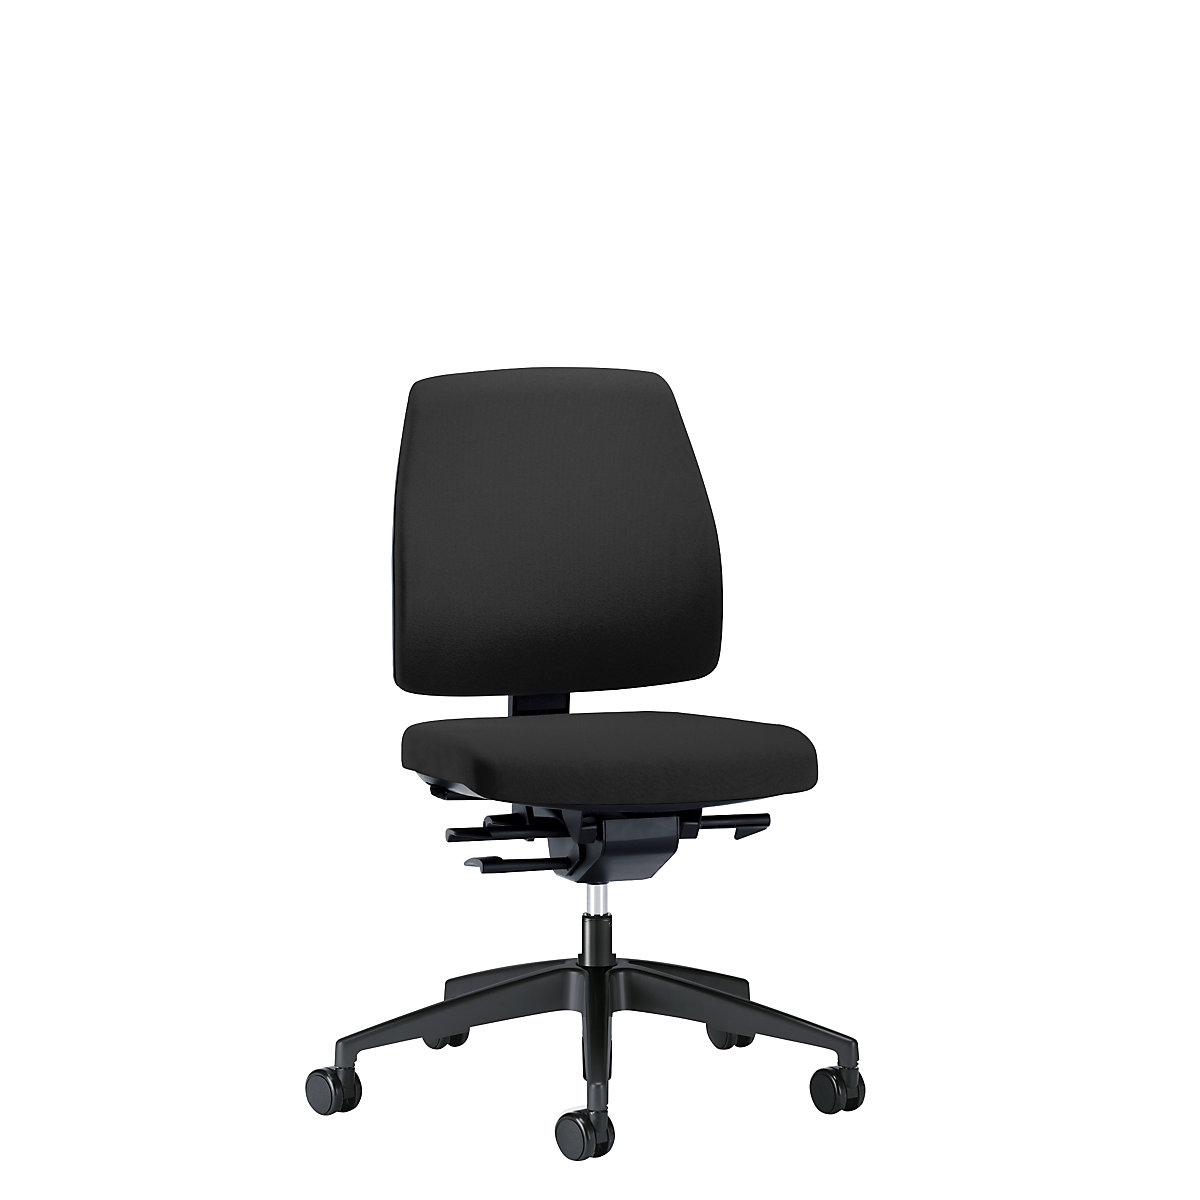 Interstuhl Goal Office Swivel Chair Back Rest Height 430 Mm Black Frame With Soft Castors Kaiser Kraft International